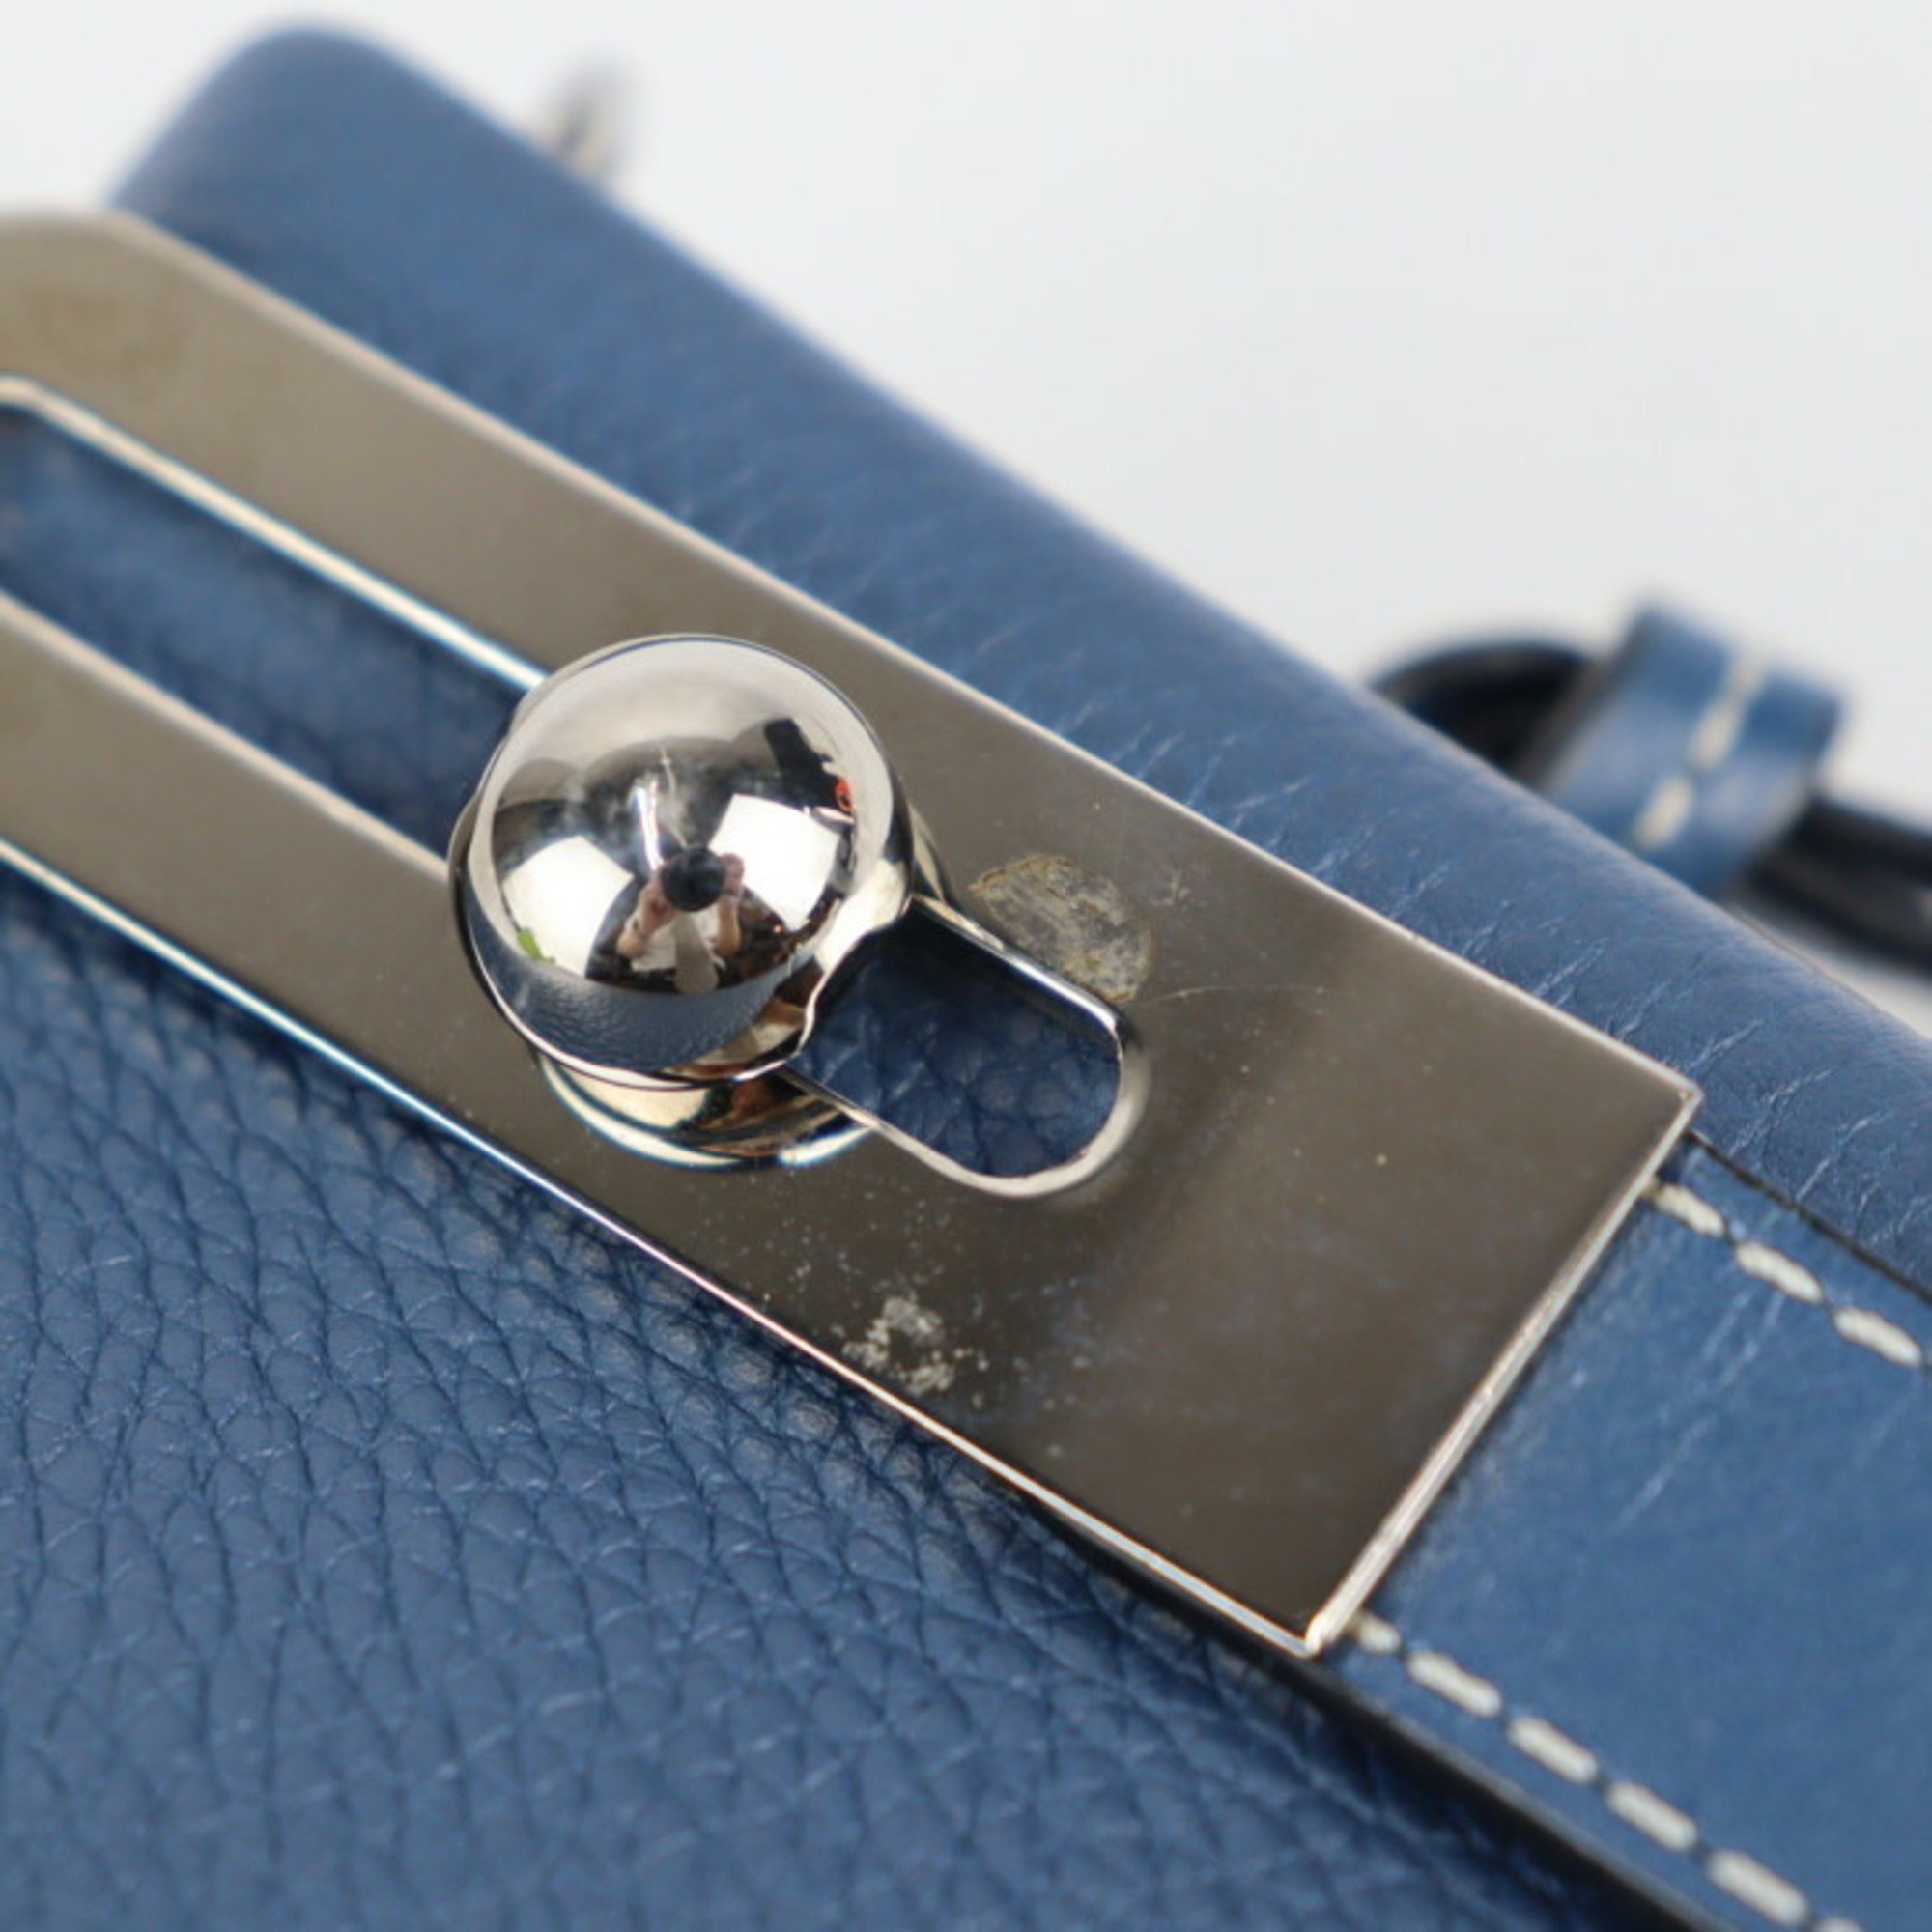 LOEWE Loewe Missy Small handbag 327.12KS28 leather blue system silver metal fittings 2WAY shoulder bag